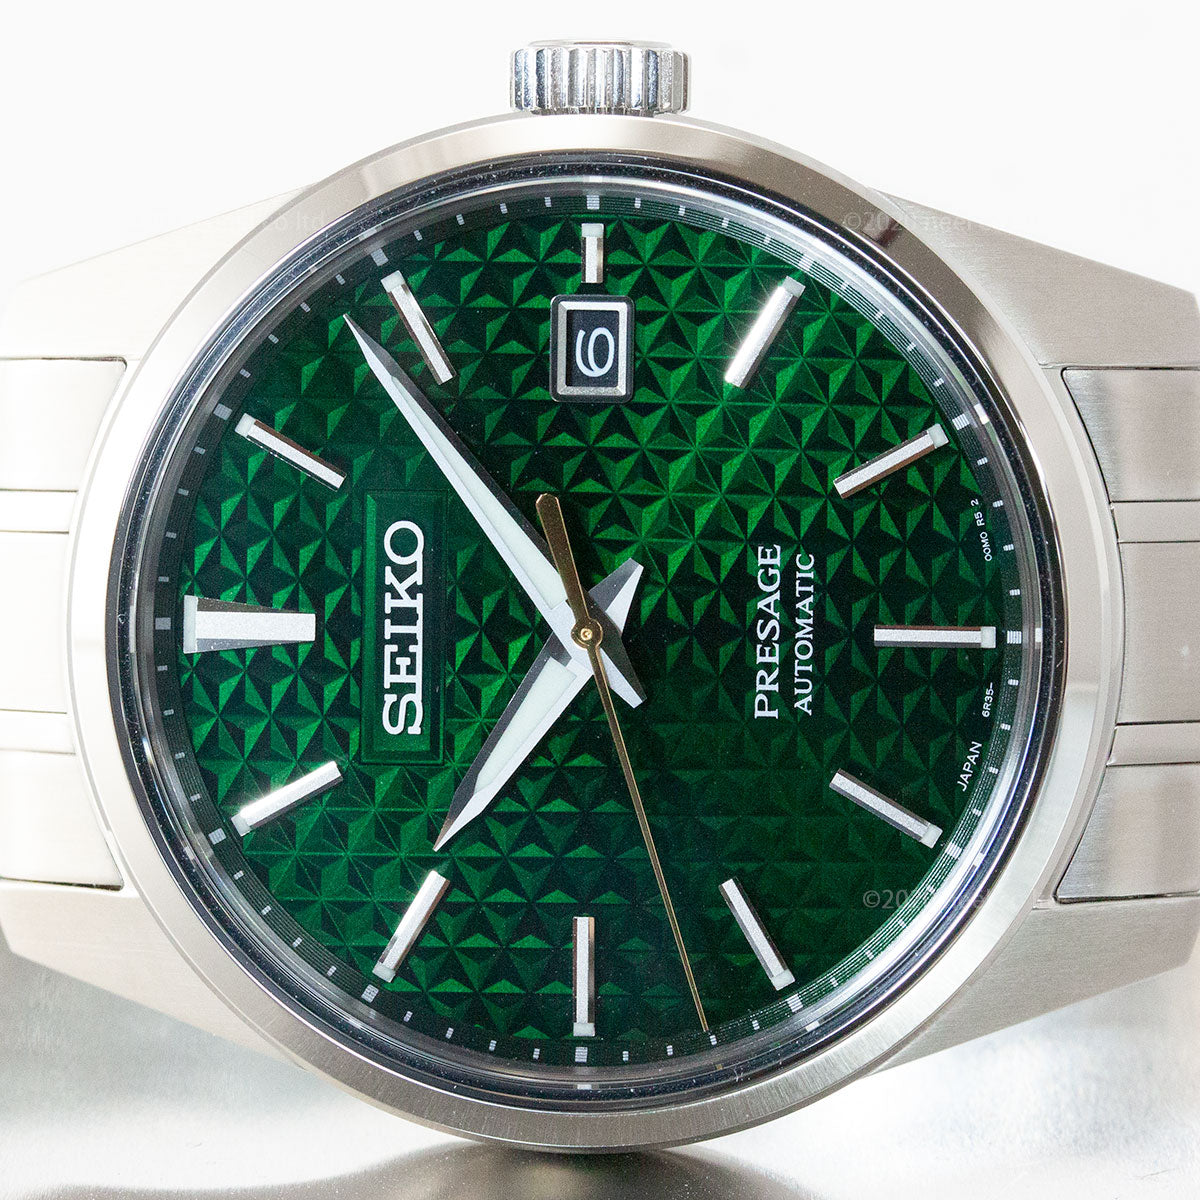 セイコー プレザージュ SEIKO PRESAGE 自動巻き メカニカル コアショップ専用モデル 腕時計 メンズ プレステージライン SARX079